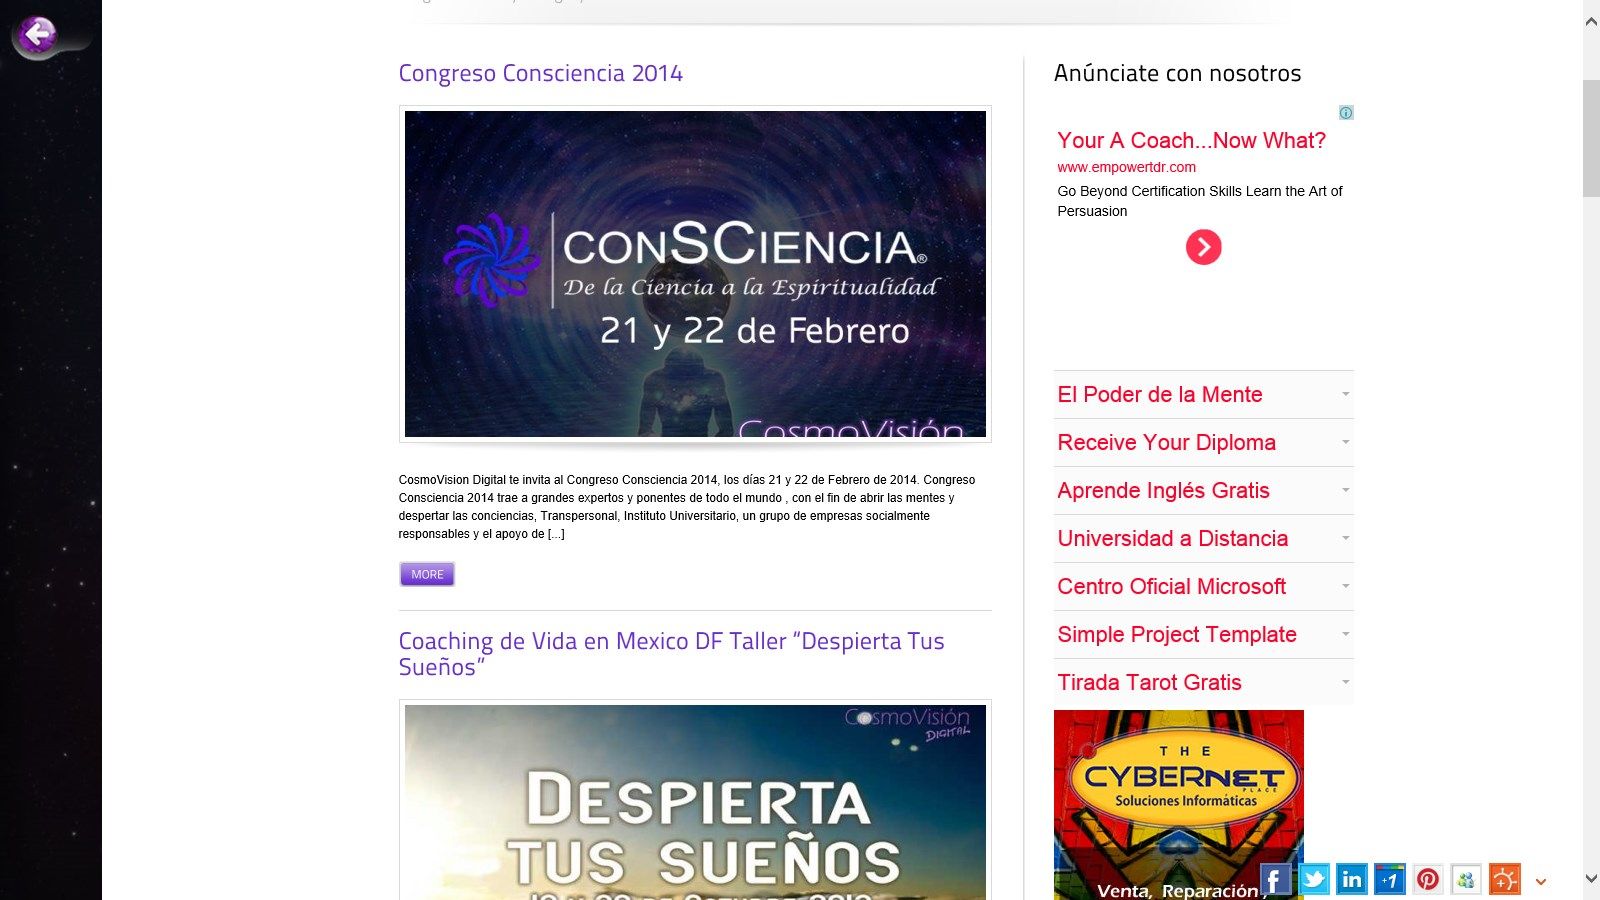 Eventos de CosmoVisión Digital